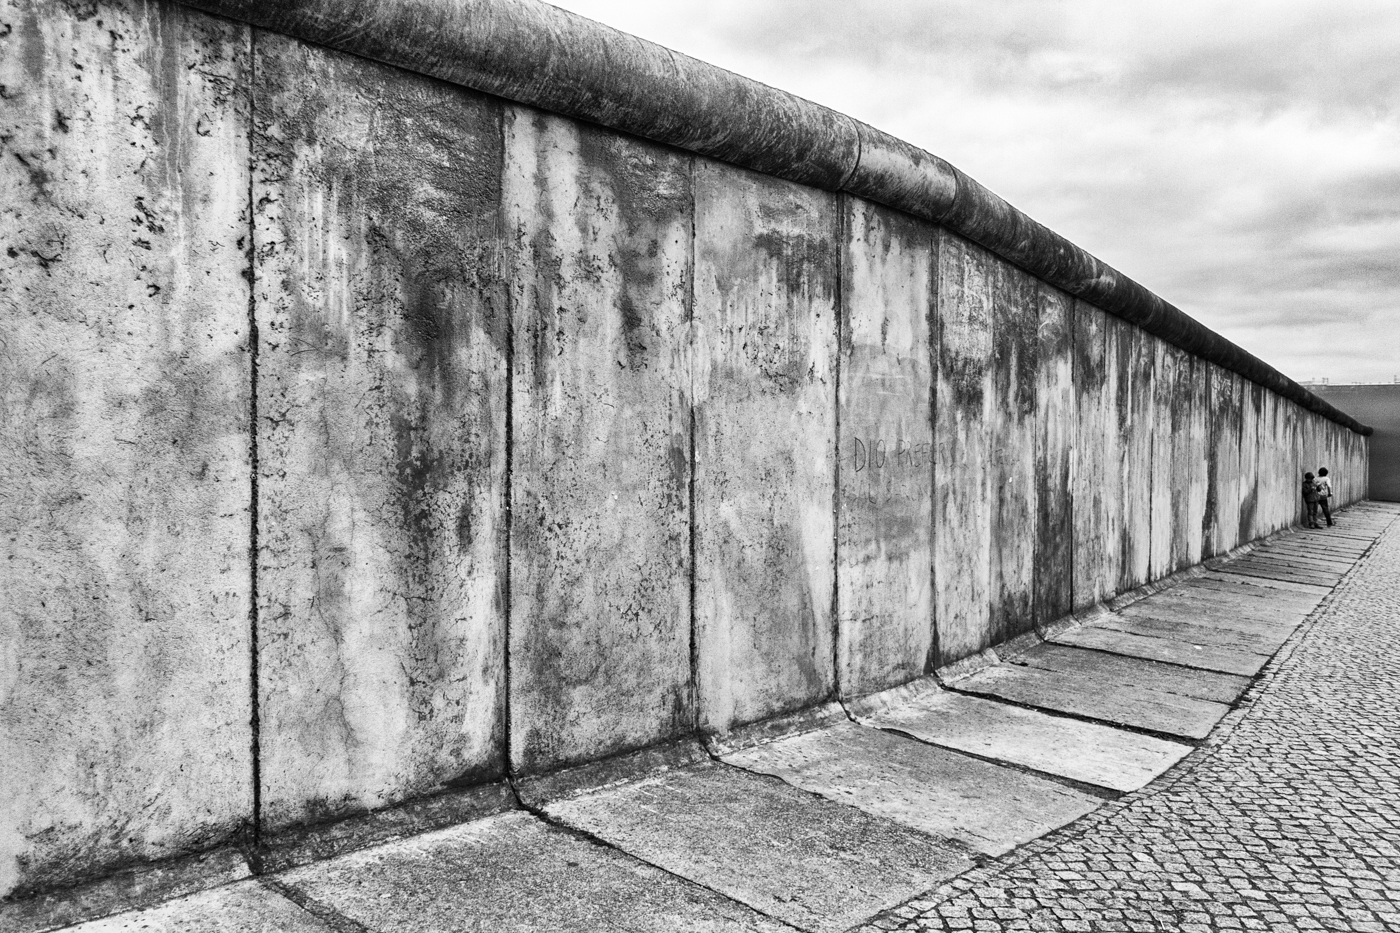 10 γεγονότα που δεν γνωρίζατε για το τείχος του Βερολίνου